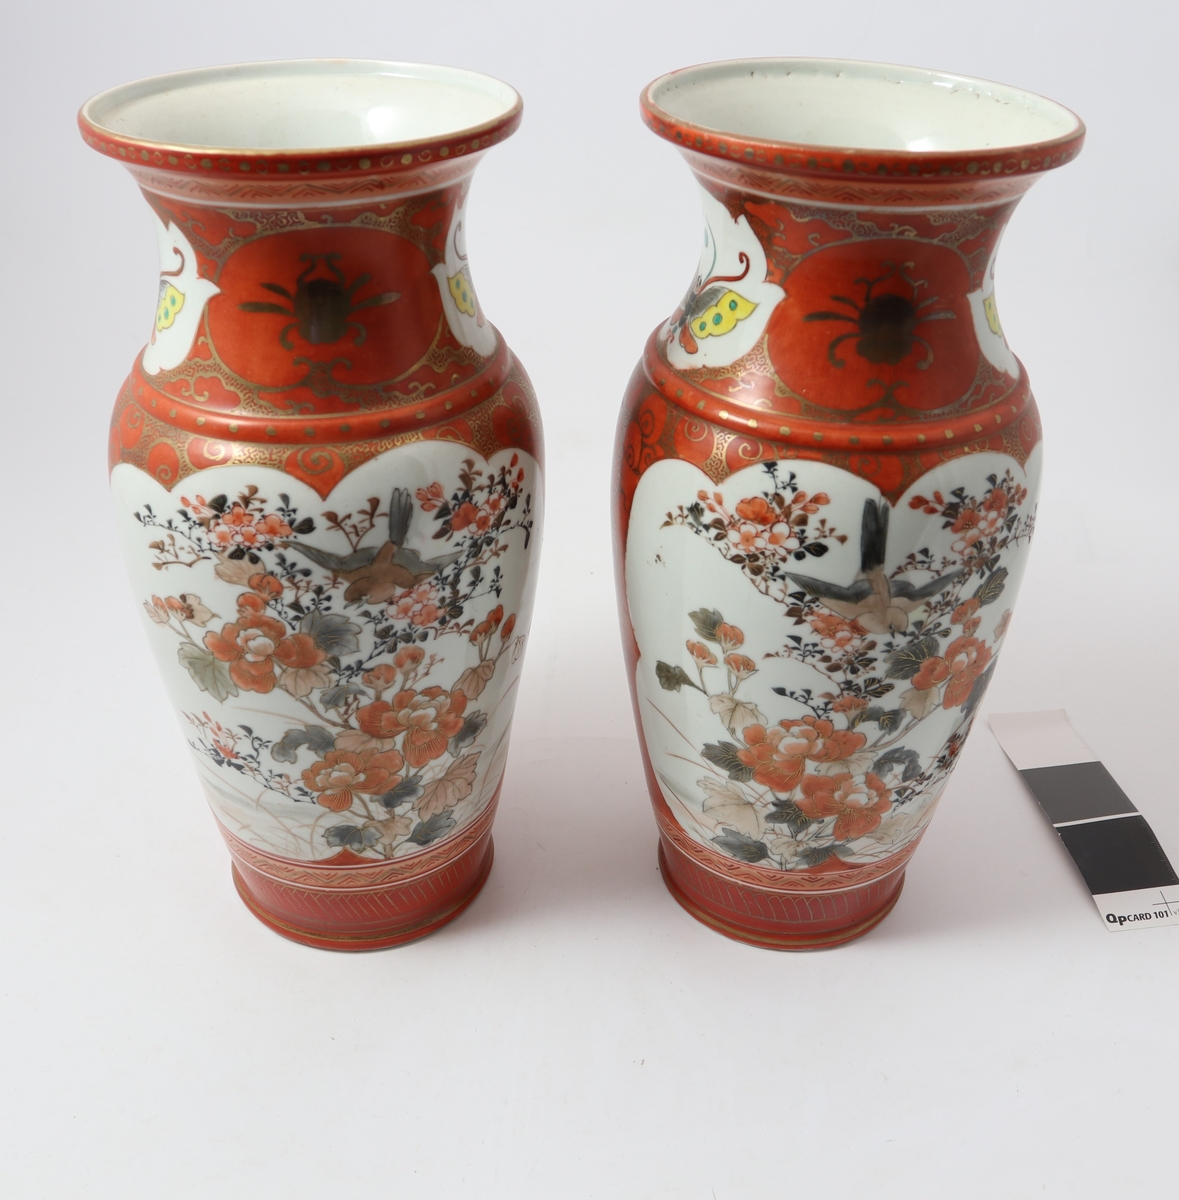 Dekor: Begge vasene: Fulg blandt blomstrende kvister/to gutter ved brettspill og en eldre mann